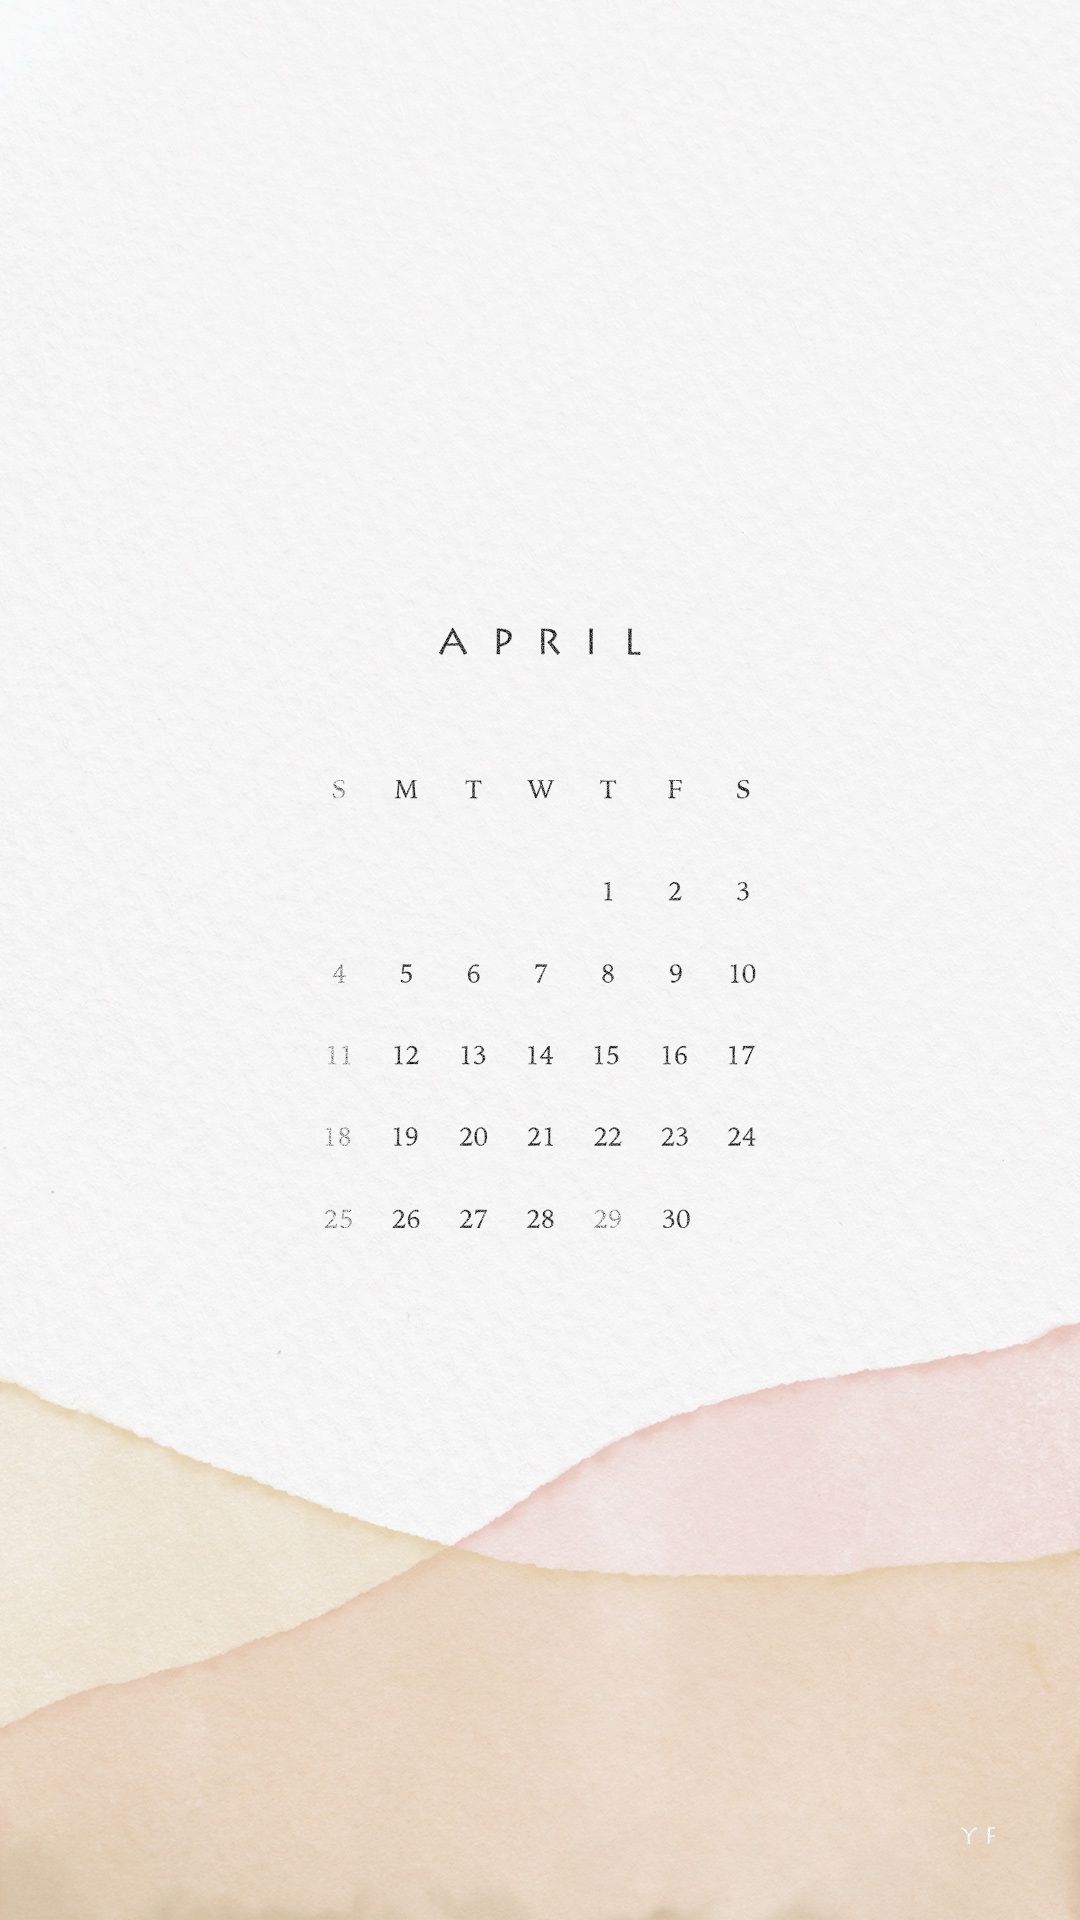 2021年4月のiPhone版日曜日始まりカレンダー壁紙 イエロー×ピンク 1080×1920px